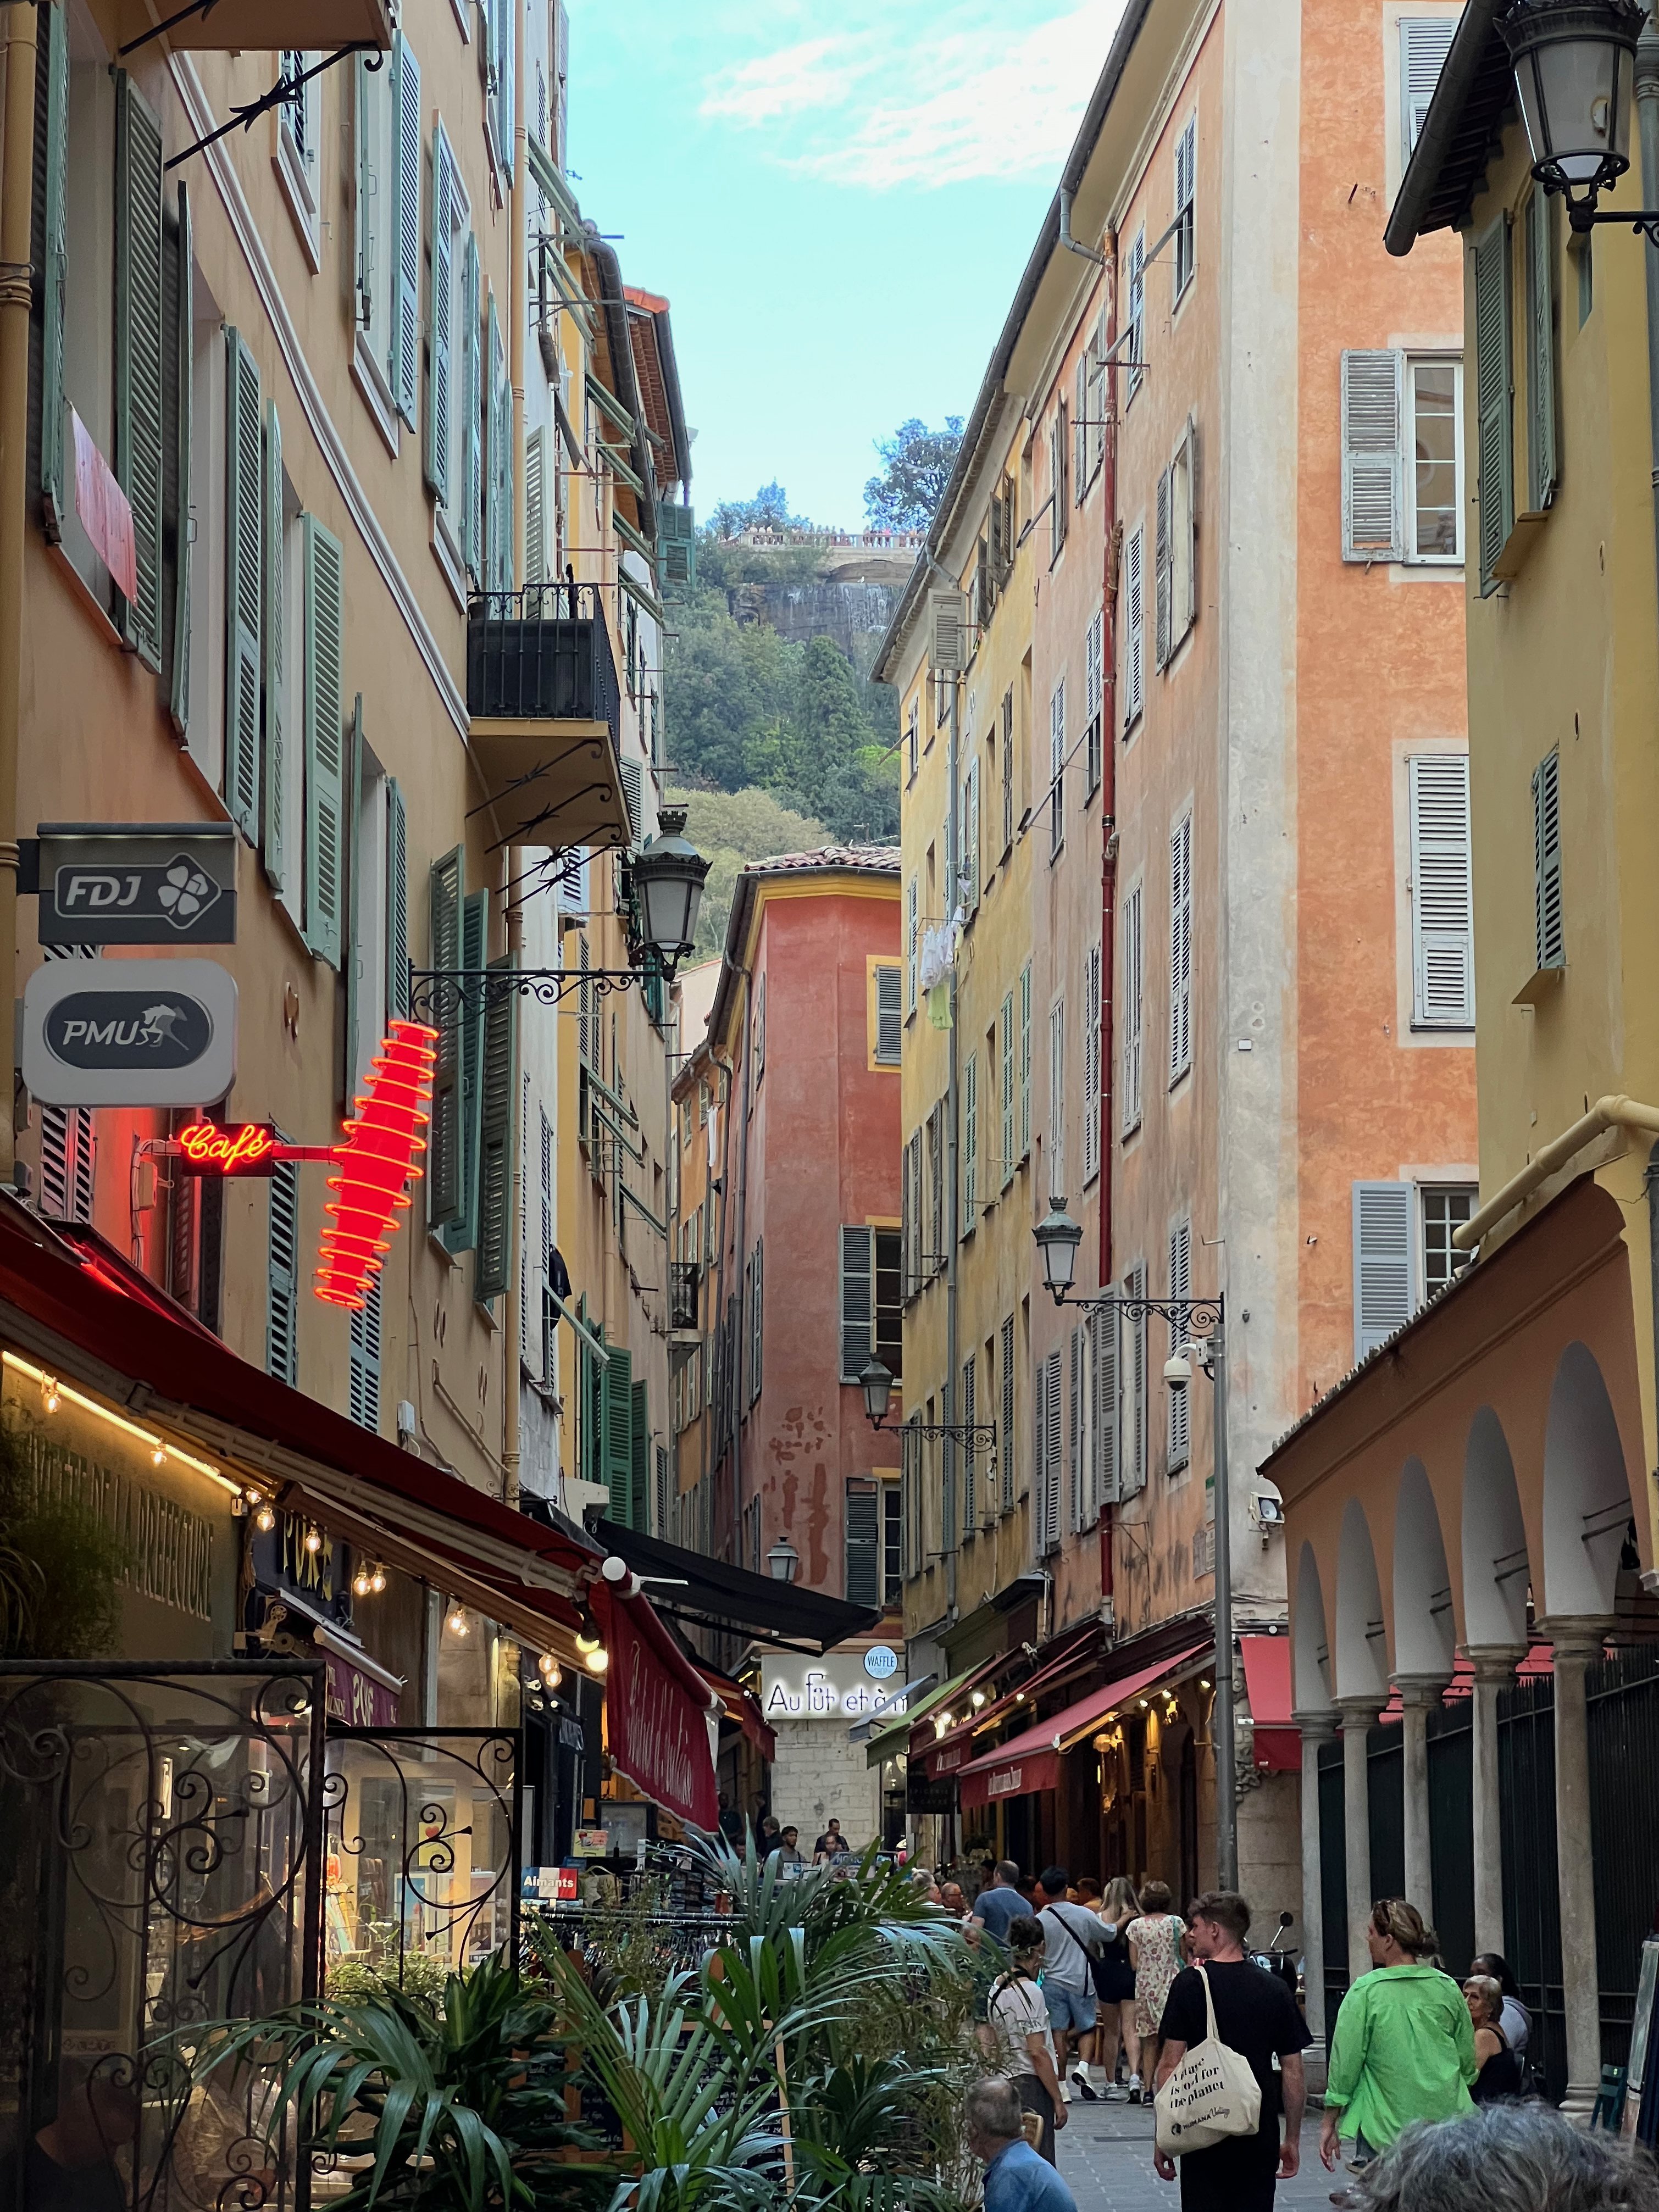 Gasse in der Aldstadt von Nizza (Vieux Nice)